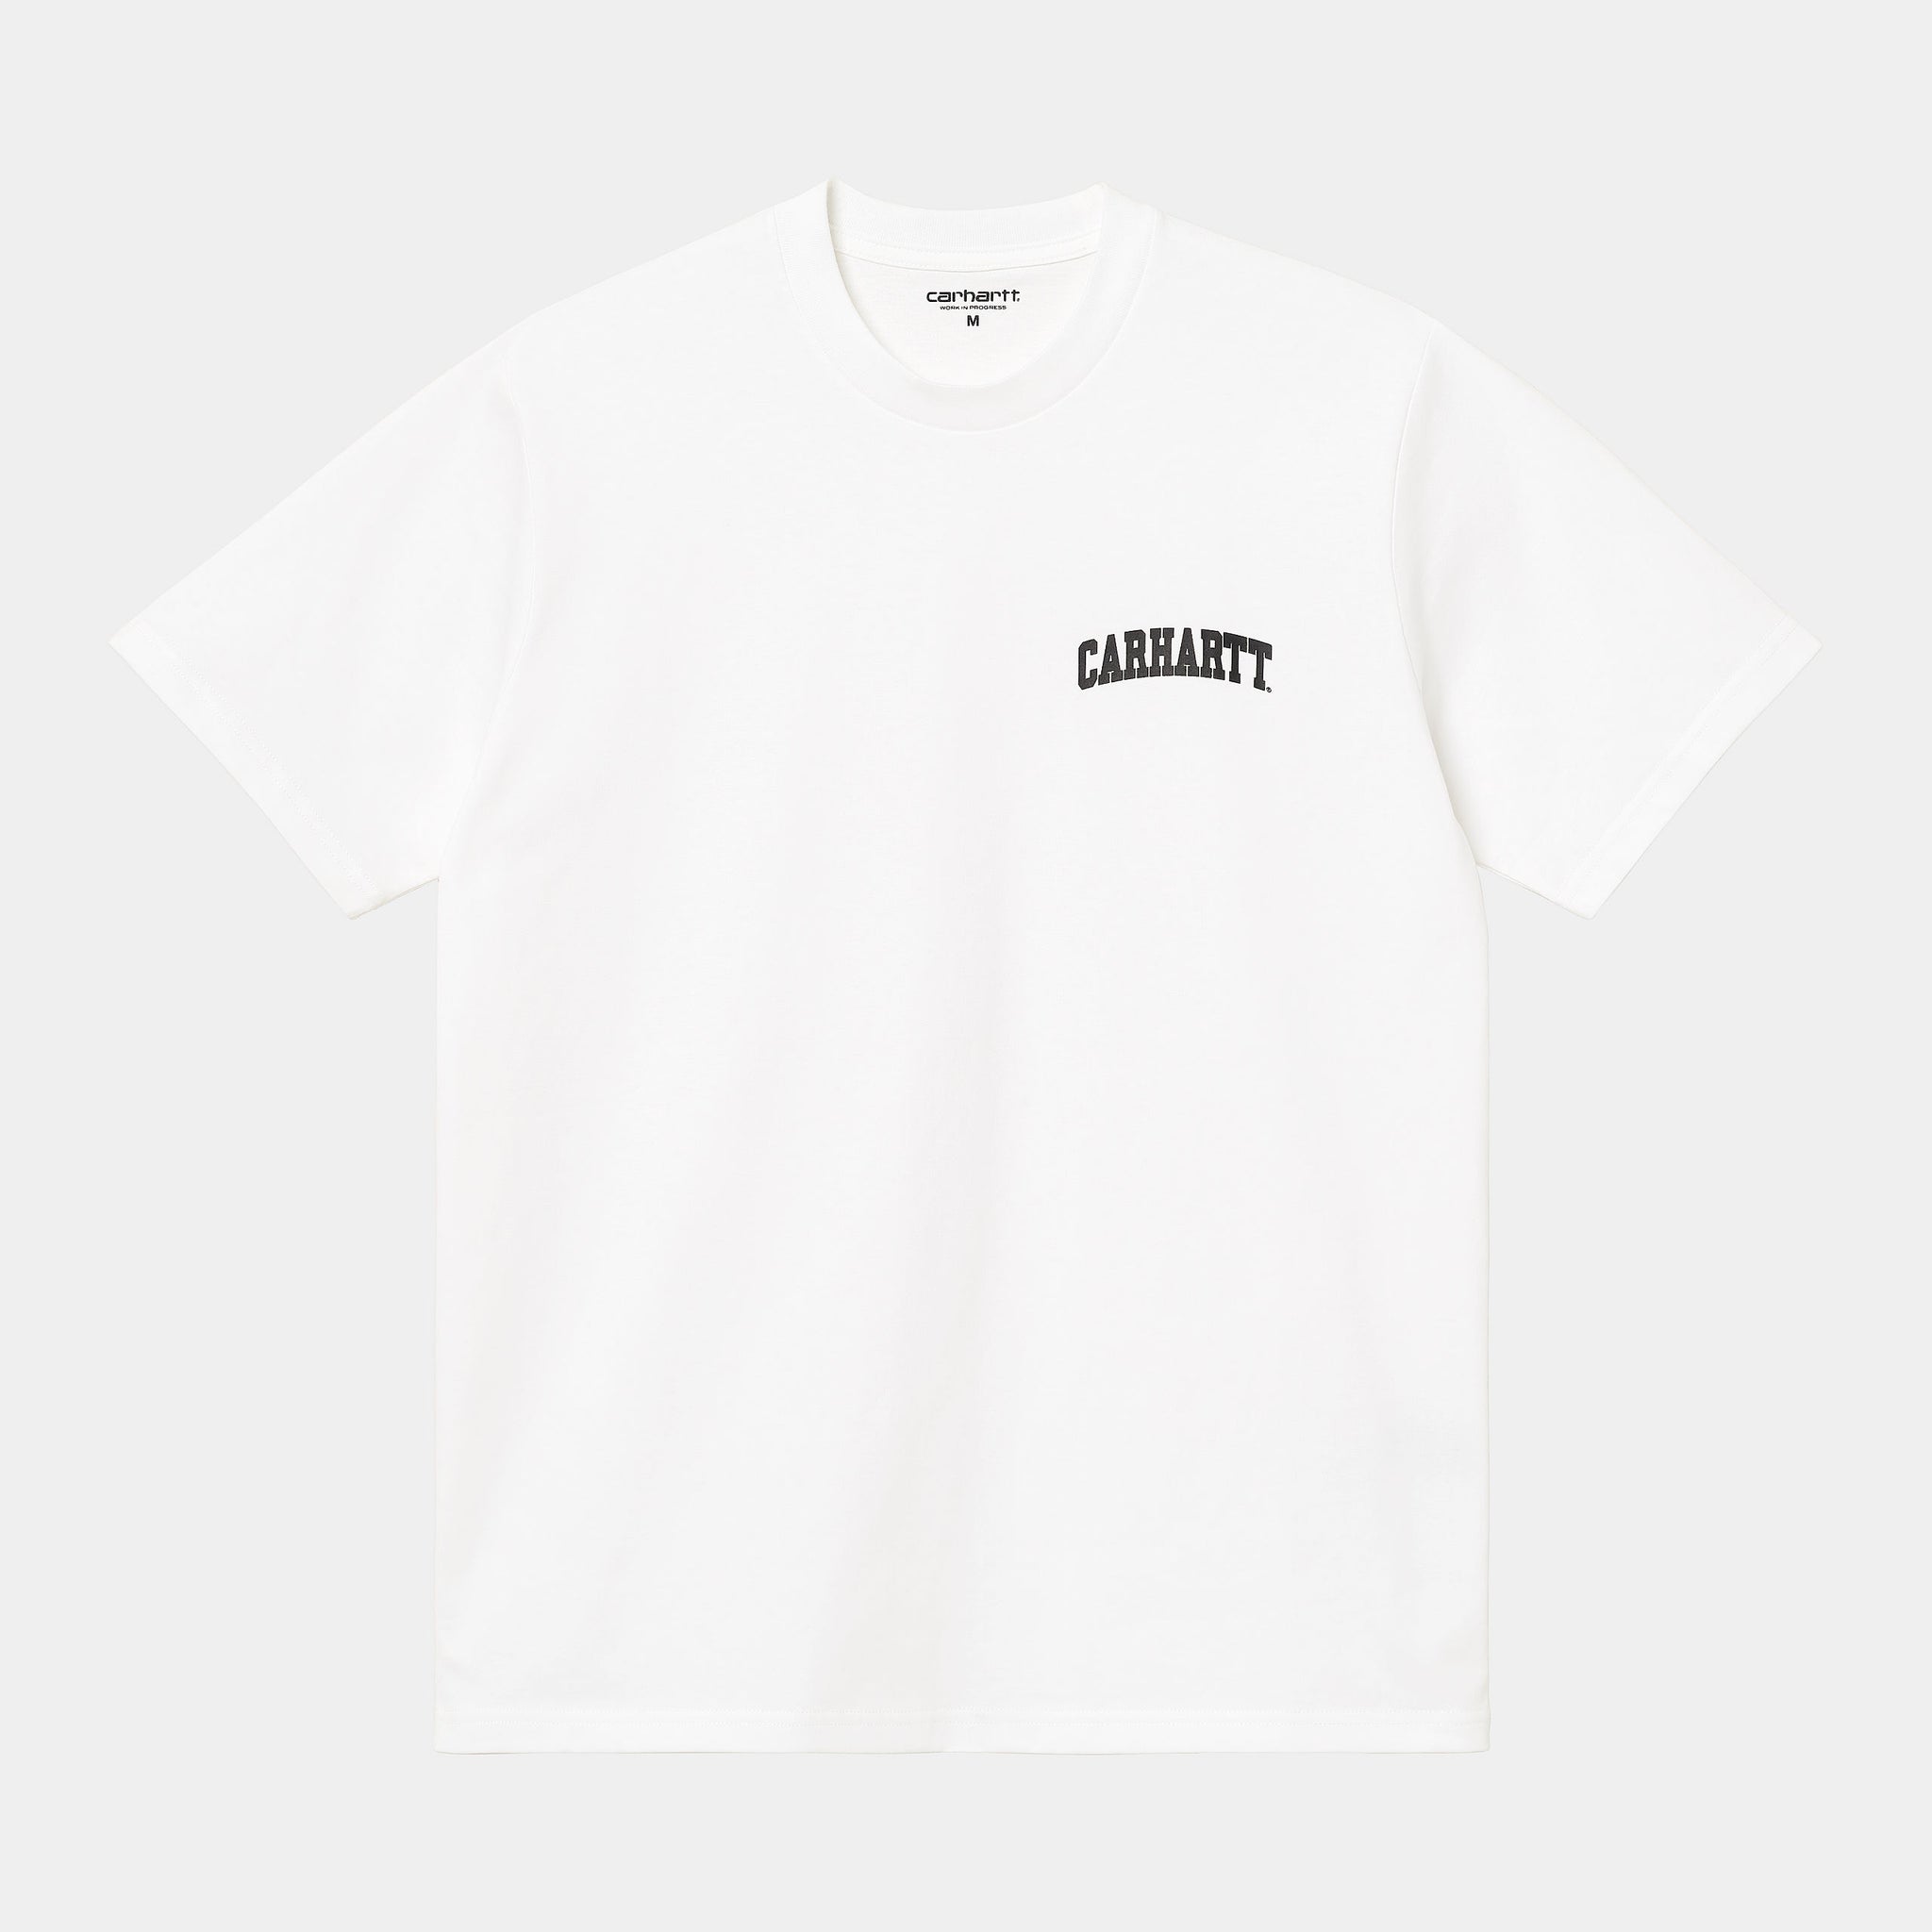 S/S University Script T-Shirt